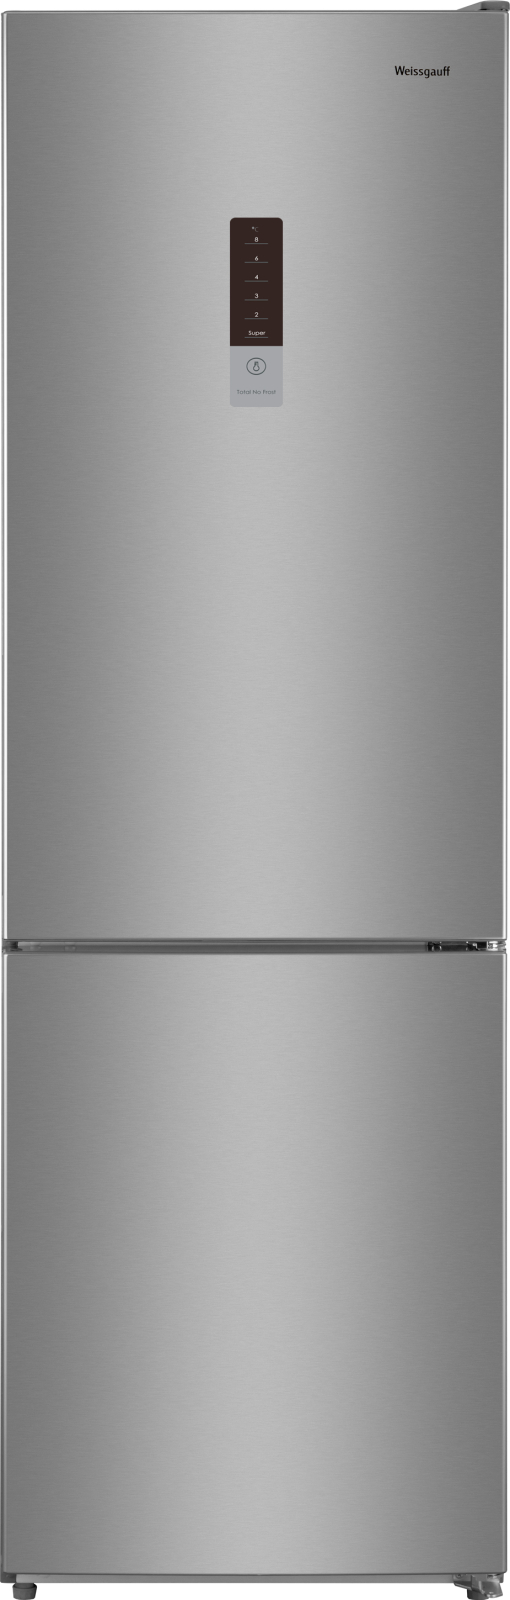 Холодильник Weissgauff WRK 190 DX серебристый двухкамерный холодильник weissgauff wrk 190 dw total nofrost